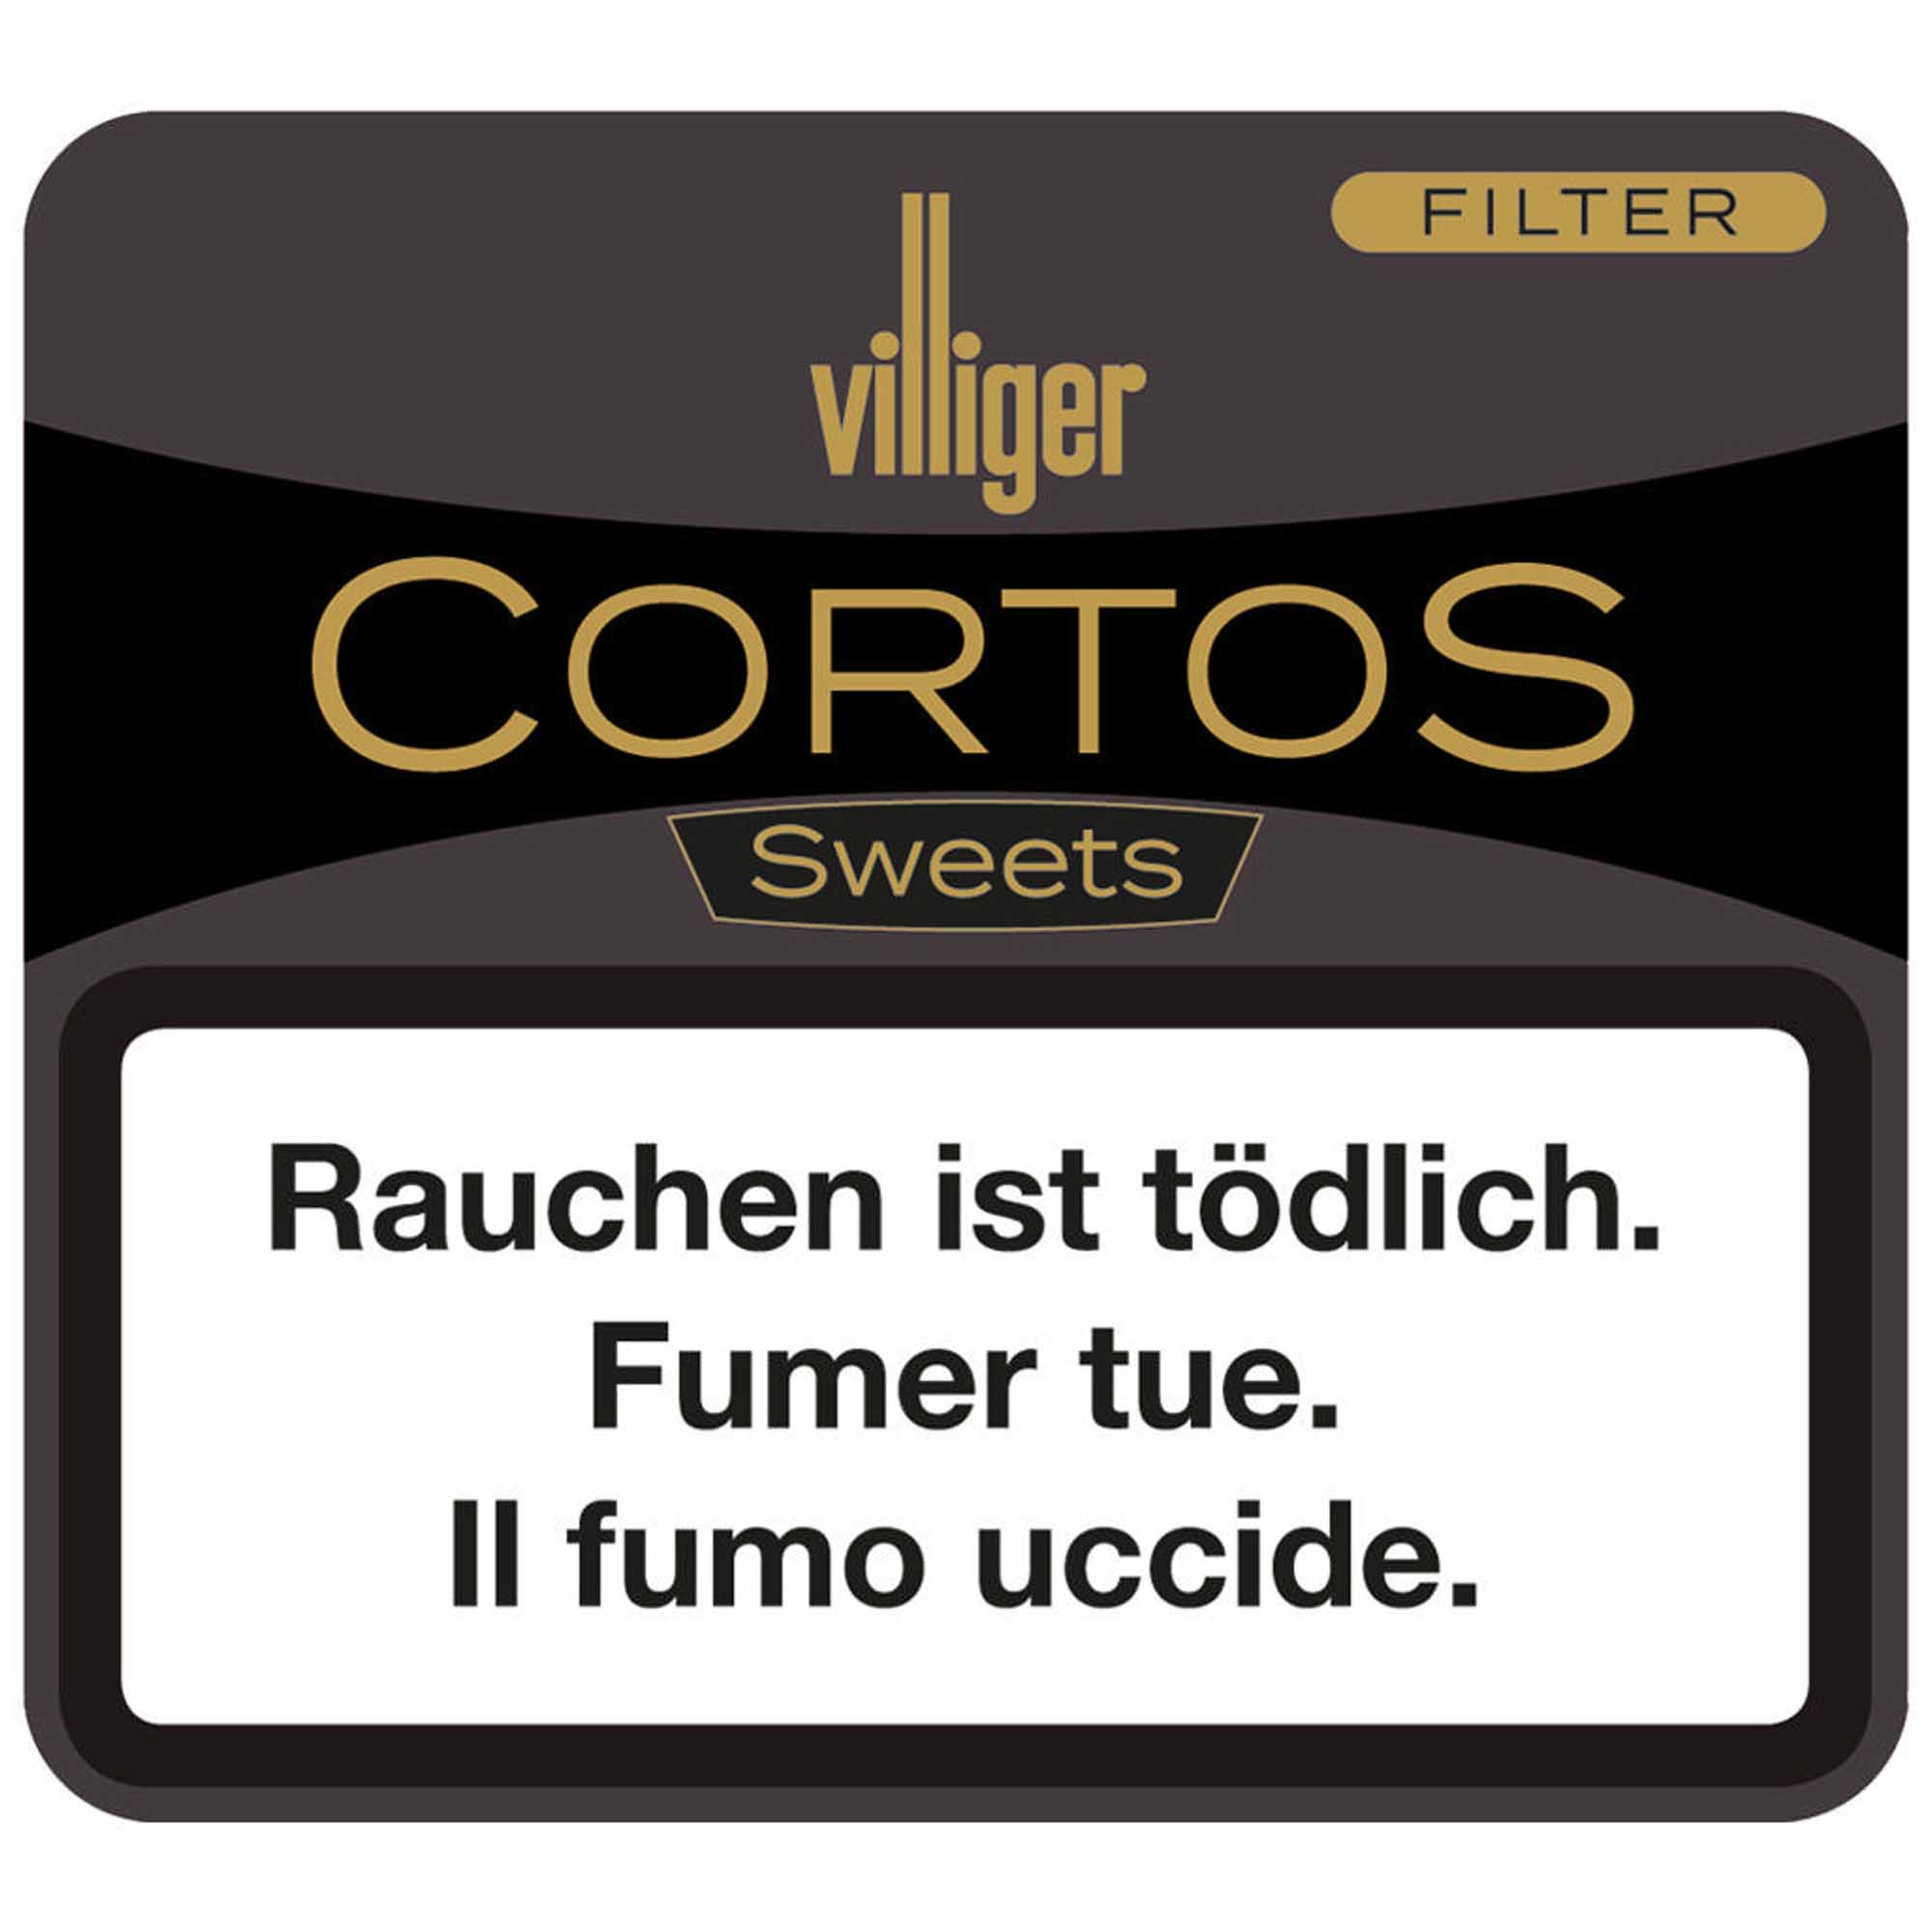 Villiger Cortos Sweets Filter